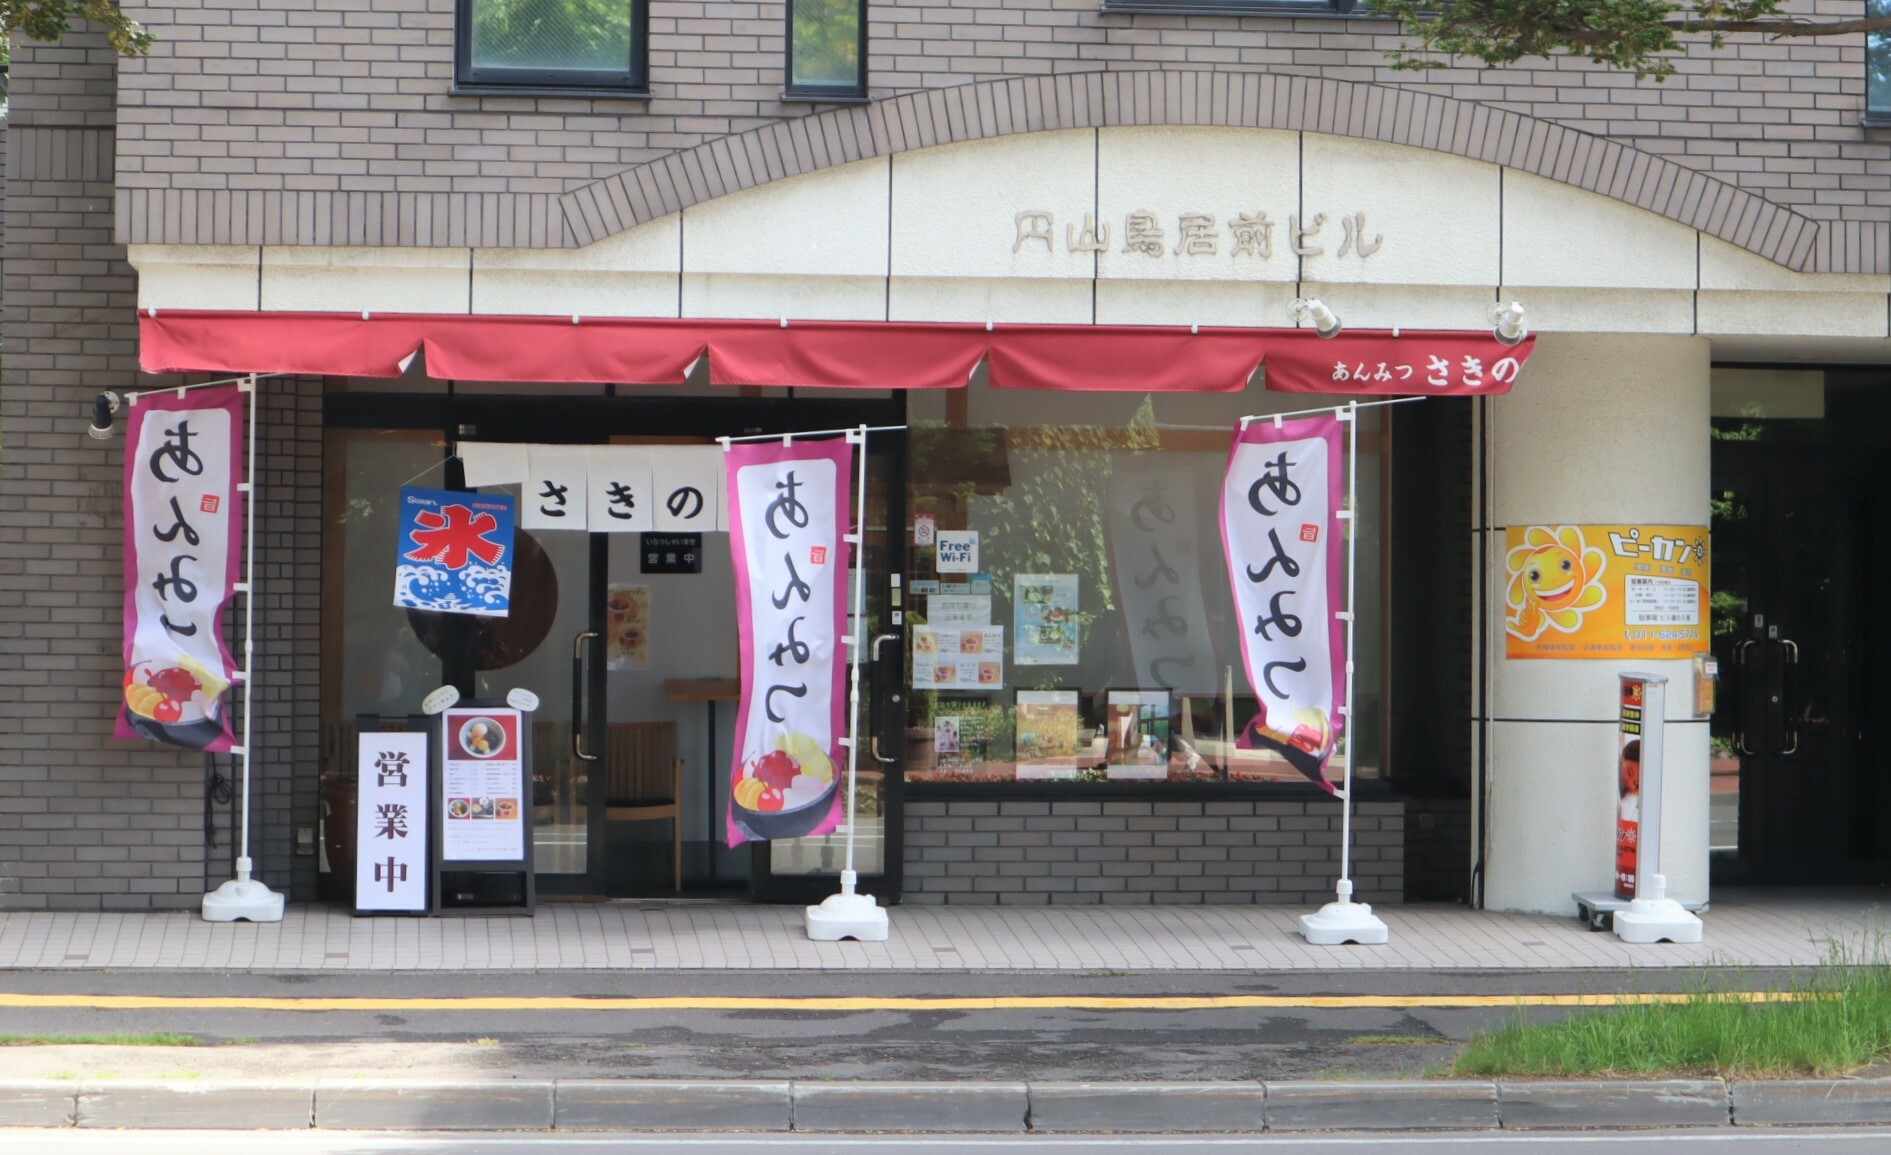 近くには「北海道神宮 第1鳥居」があり、鳥居から北海道神宮に向かうと店舗は左側にあります。